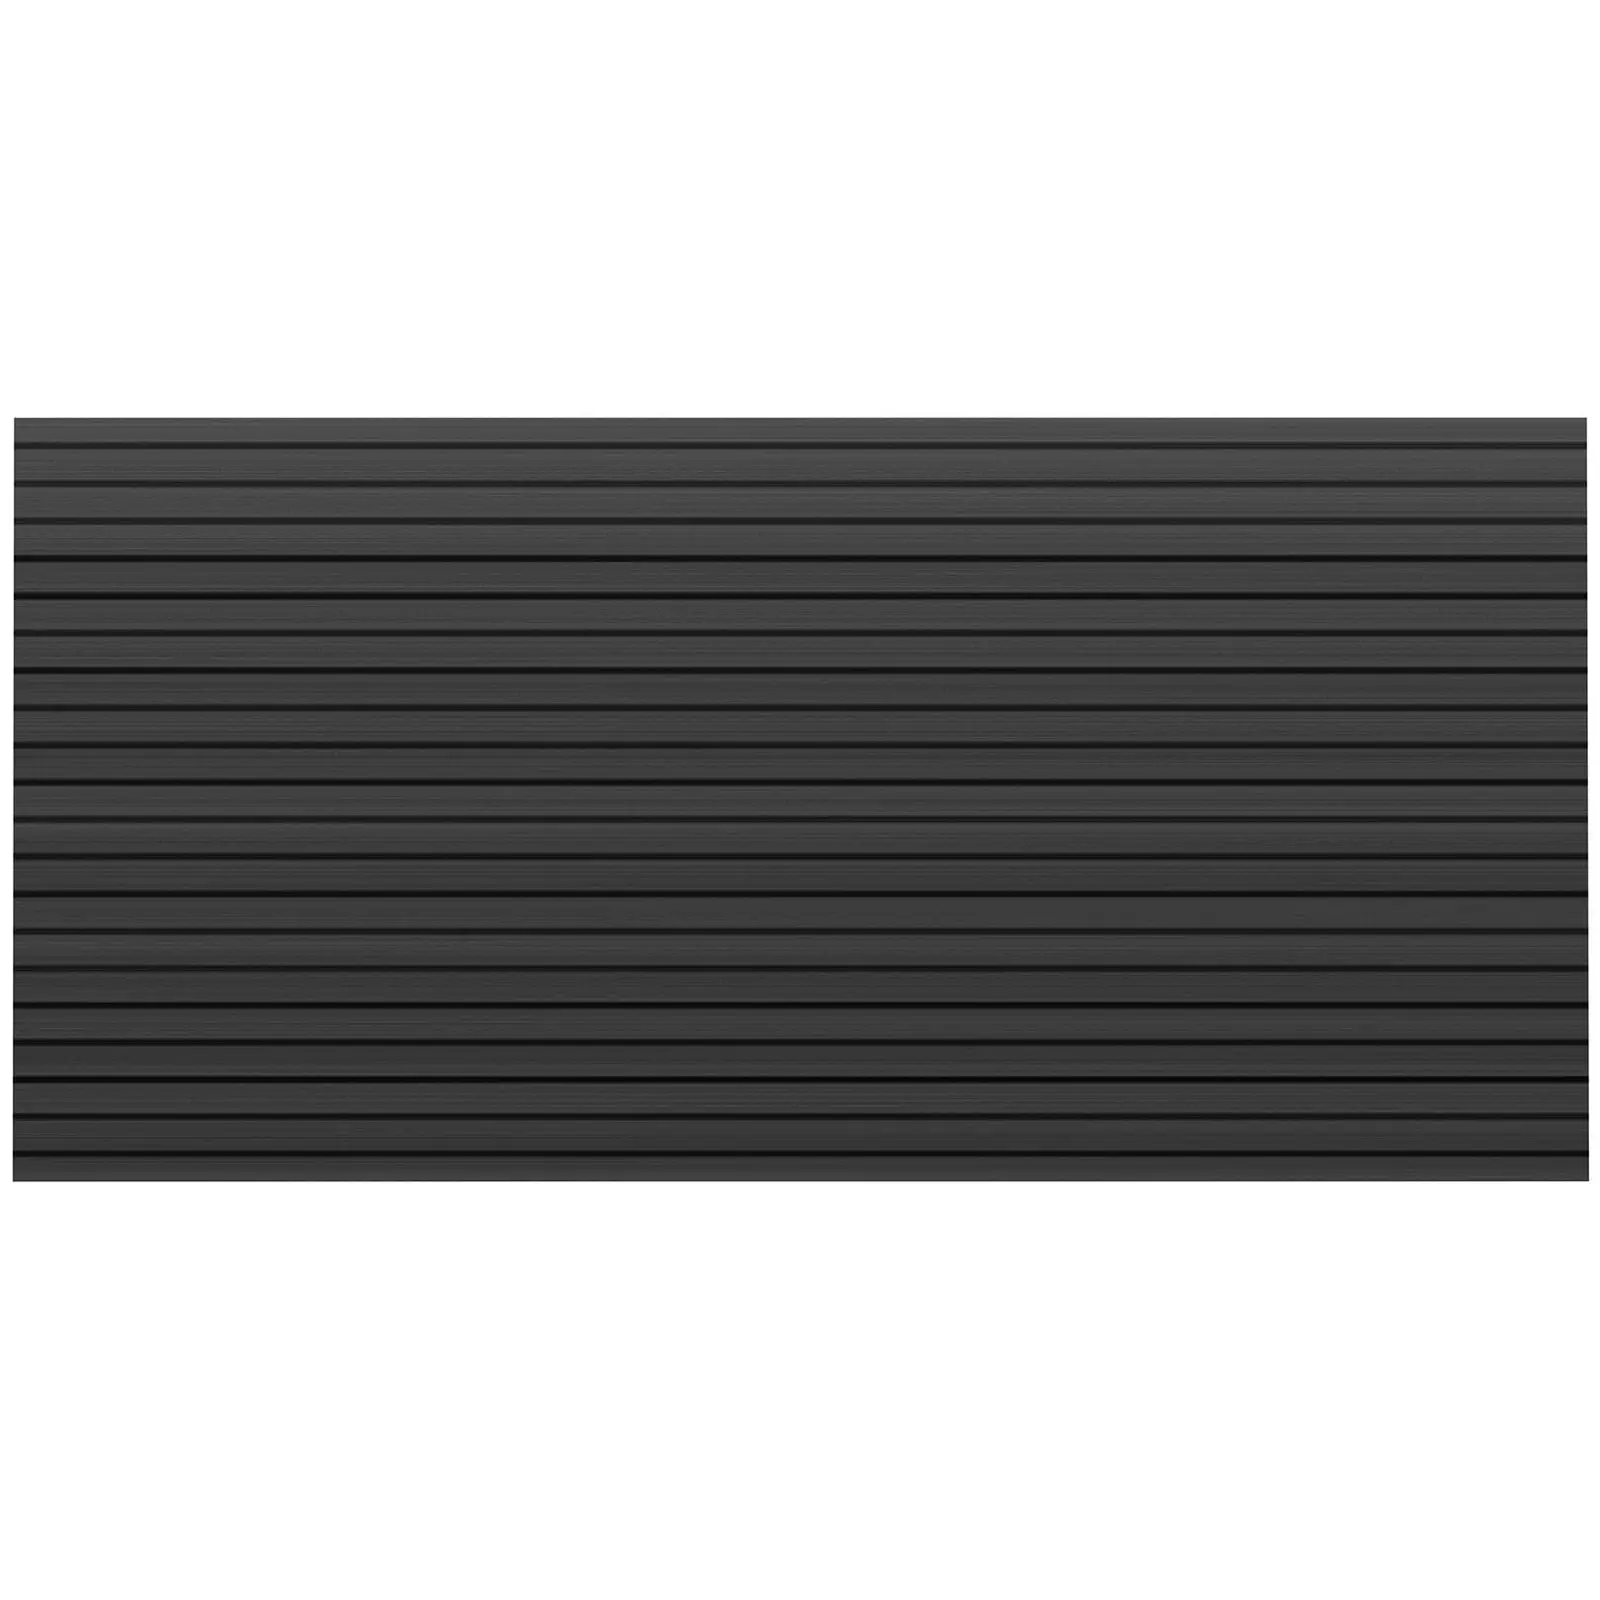 Rivestimento per pavimento barche - 240 x 120 cm - Antracite, nero